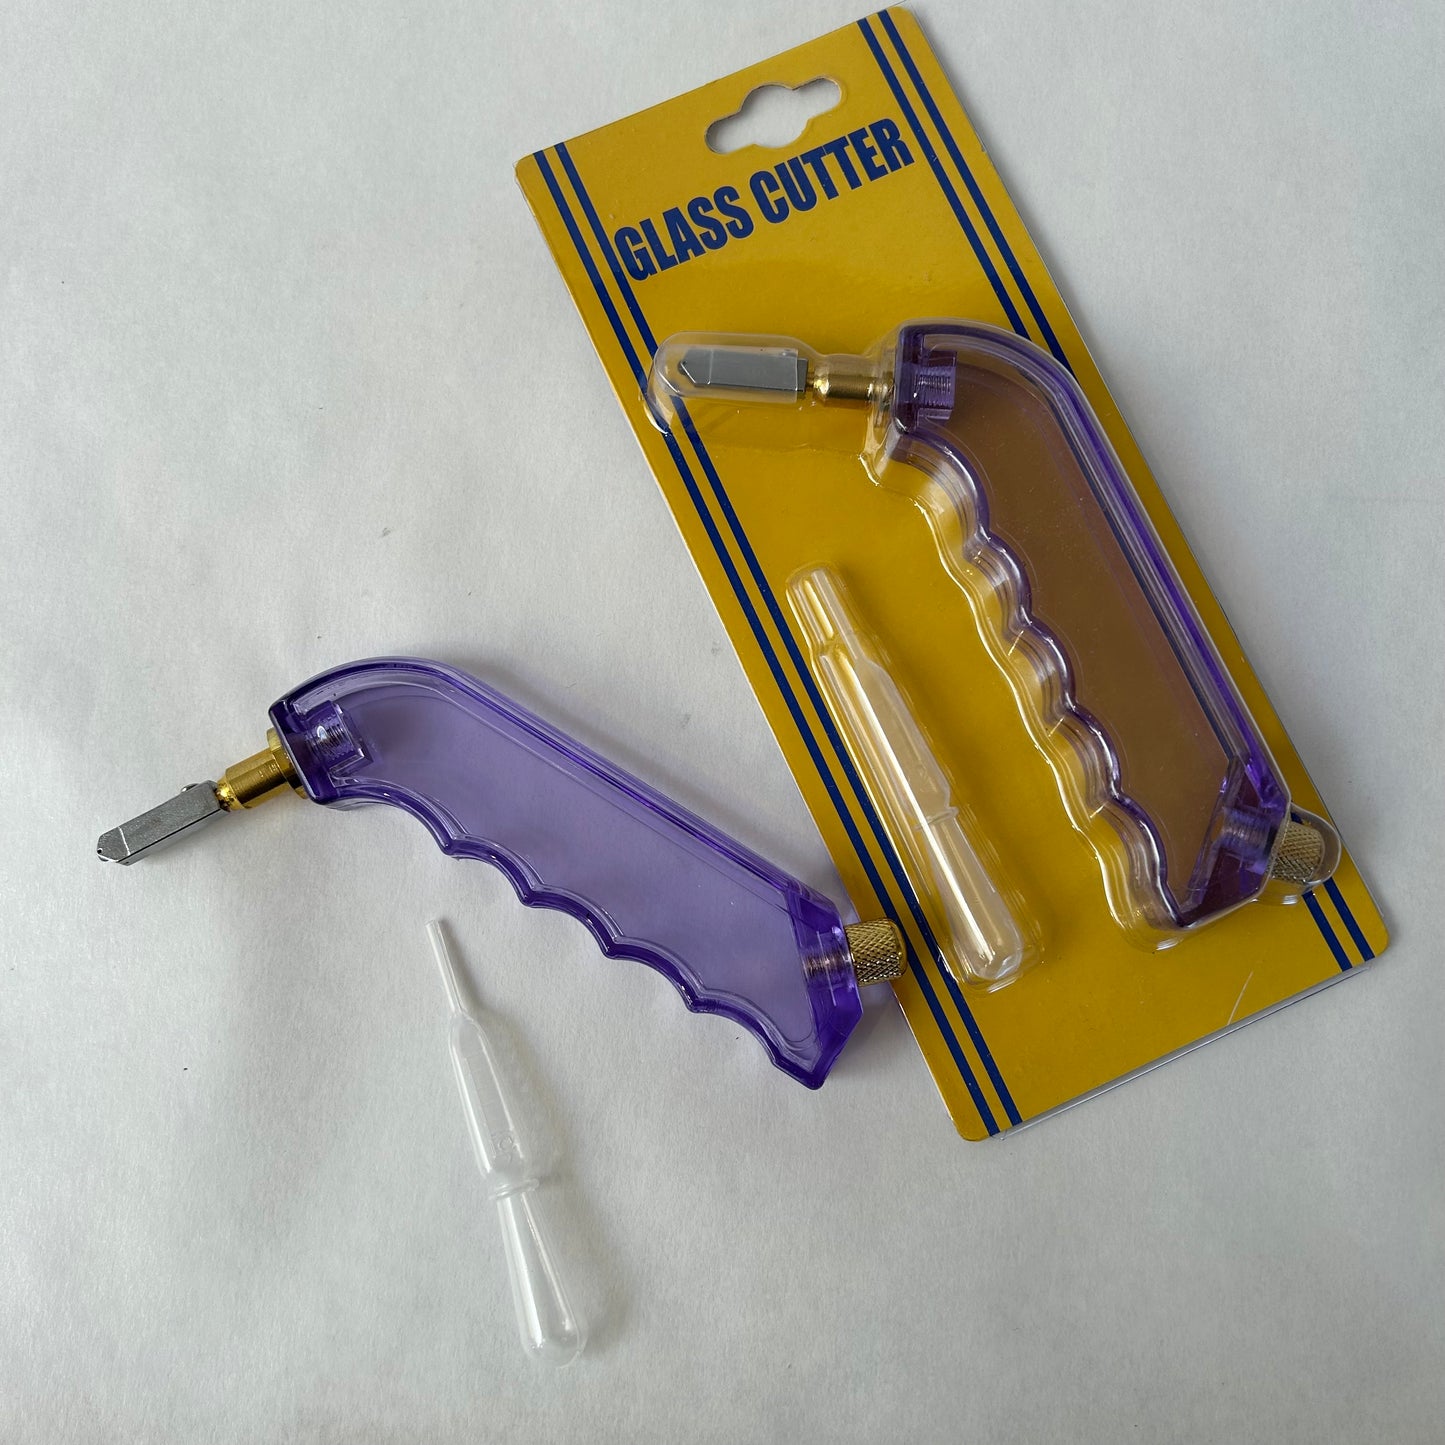 Pistol grip self-oiling glass cutter